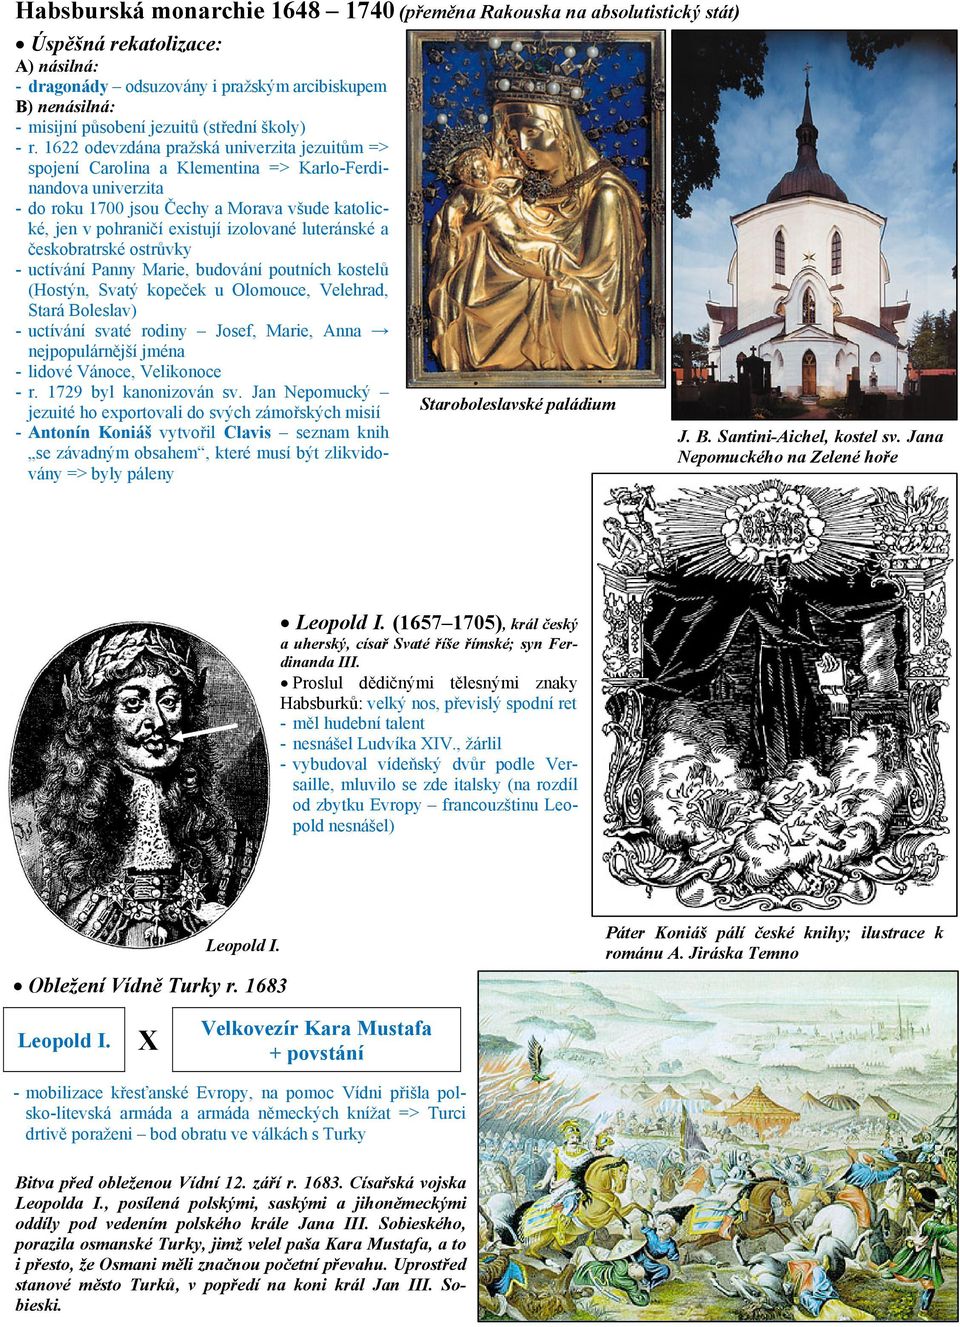 1622 odevzdána pražská univerzita jezuitům => spojení Carolina a Klementina => Karlo-Ferdinandova univerzita - do roku 1700 jsou Čechy a Morava všude katolické, jen v pohraničí existují izolované